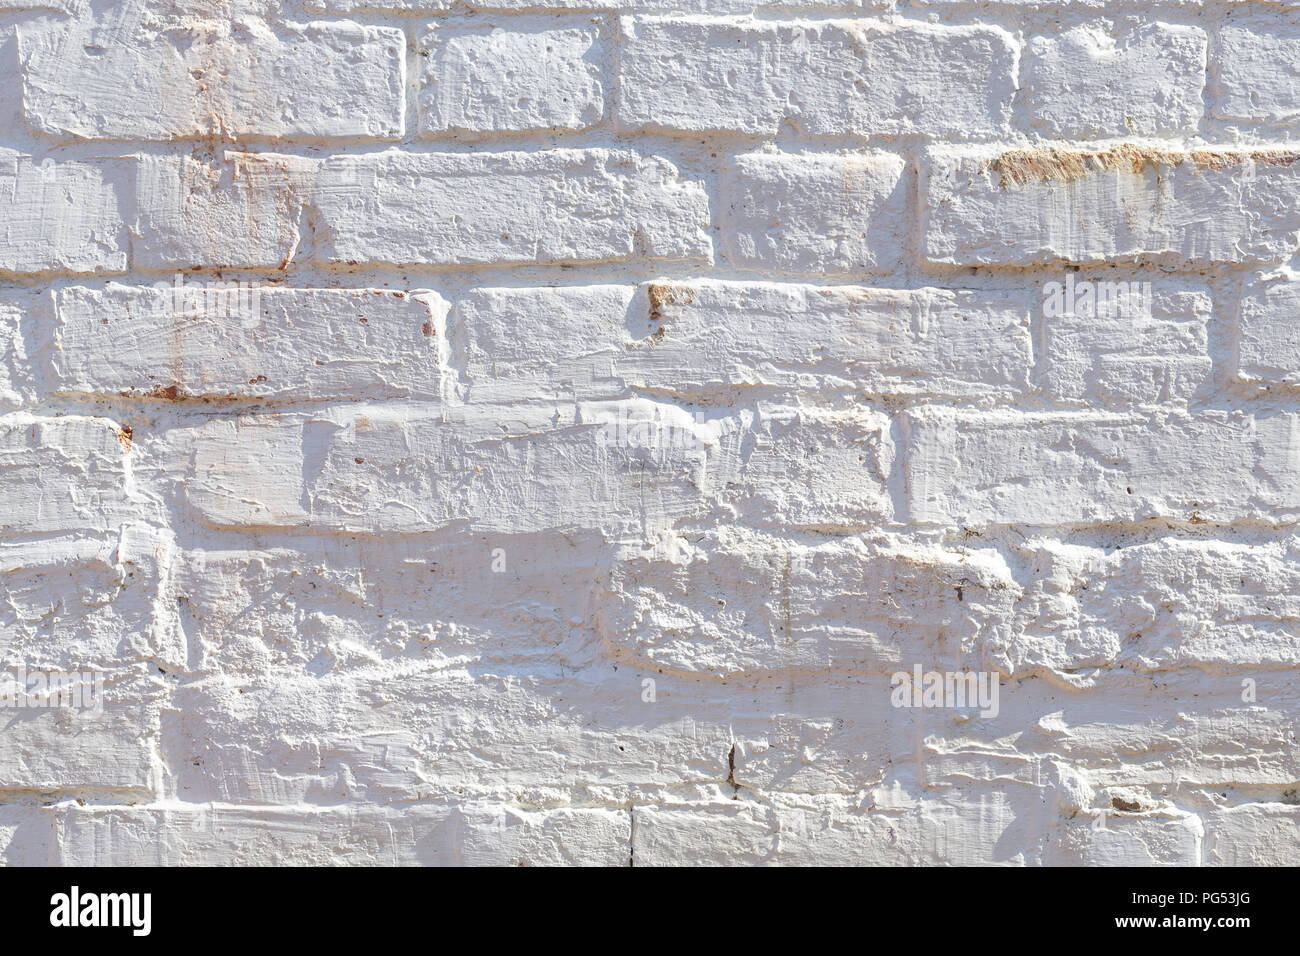 Dettaglio del vecchio muro di mattoni dipinto di bianco e addolorato, peeling e colorate. Ideale per gruppi grunge texture di sfondo Foto Stock